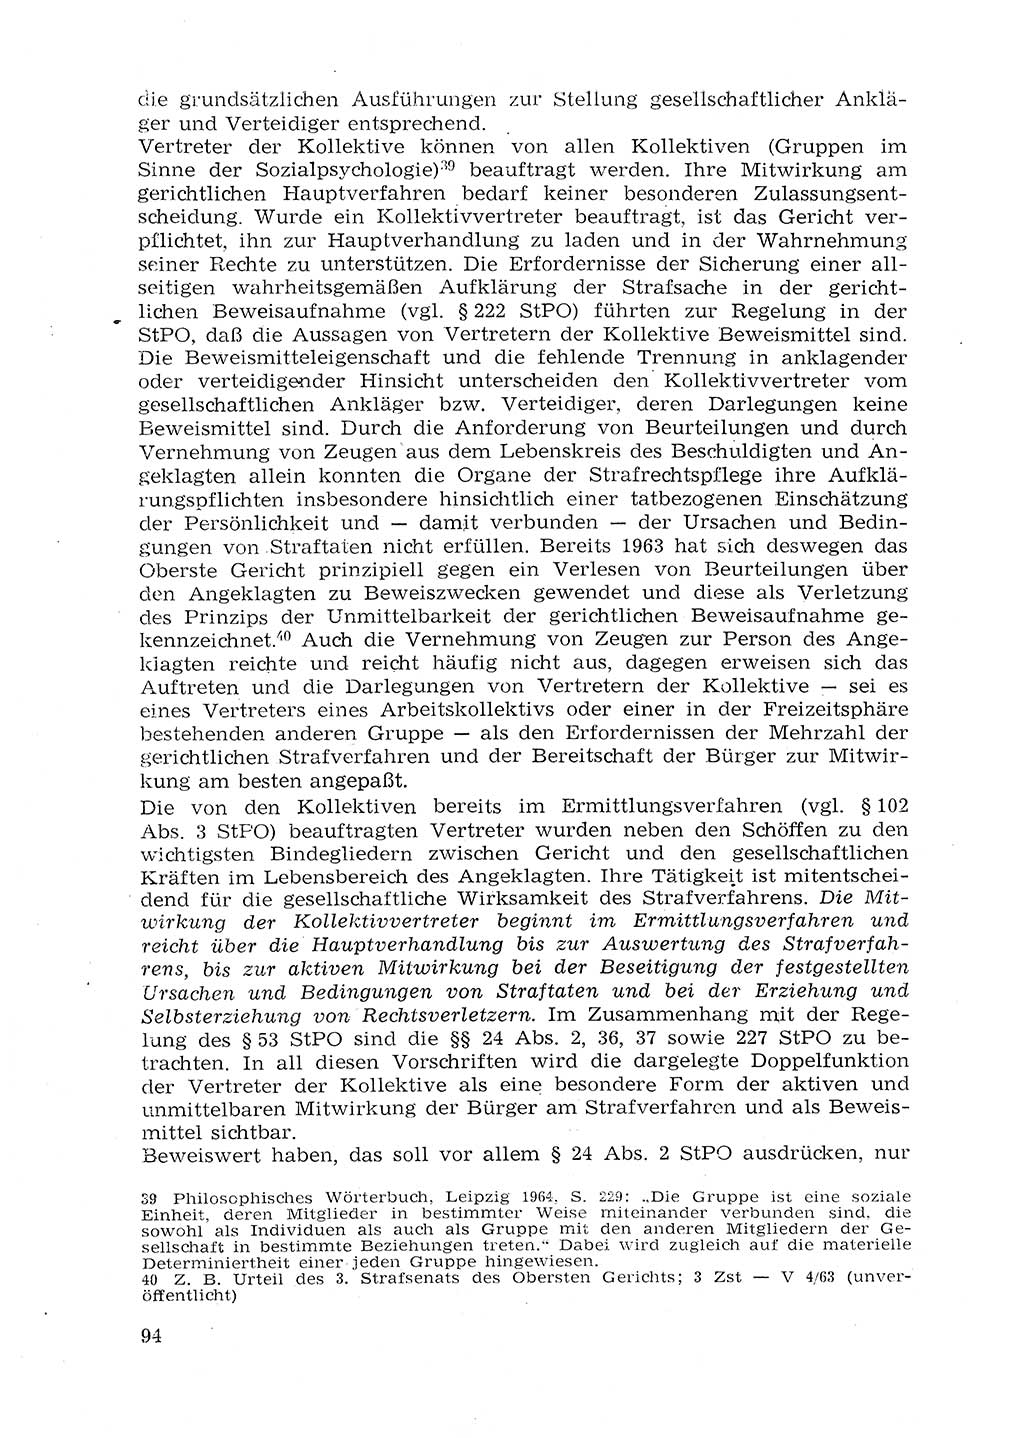 Strafprozeßrecht der DDR (Deutsche Demokratische Republik), Lehrmaterial 1969, Seite 94 (Strafprozeßr. DDR Lehrmat. 1969, S. 94)